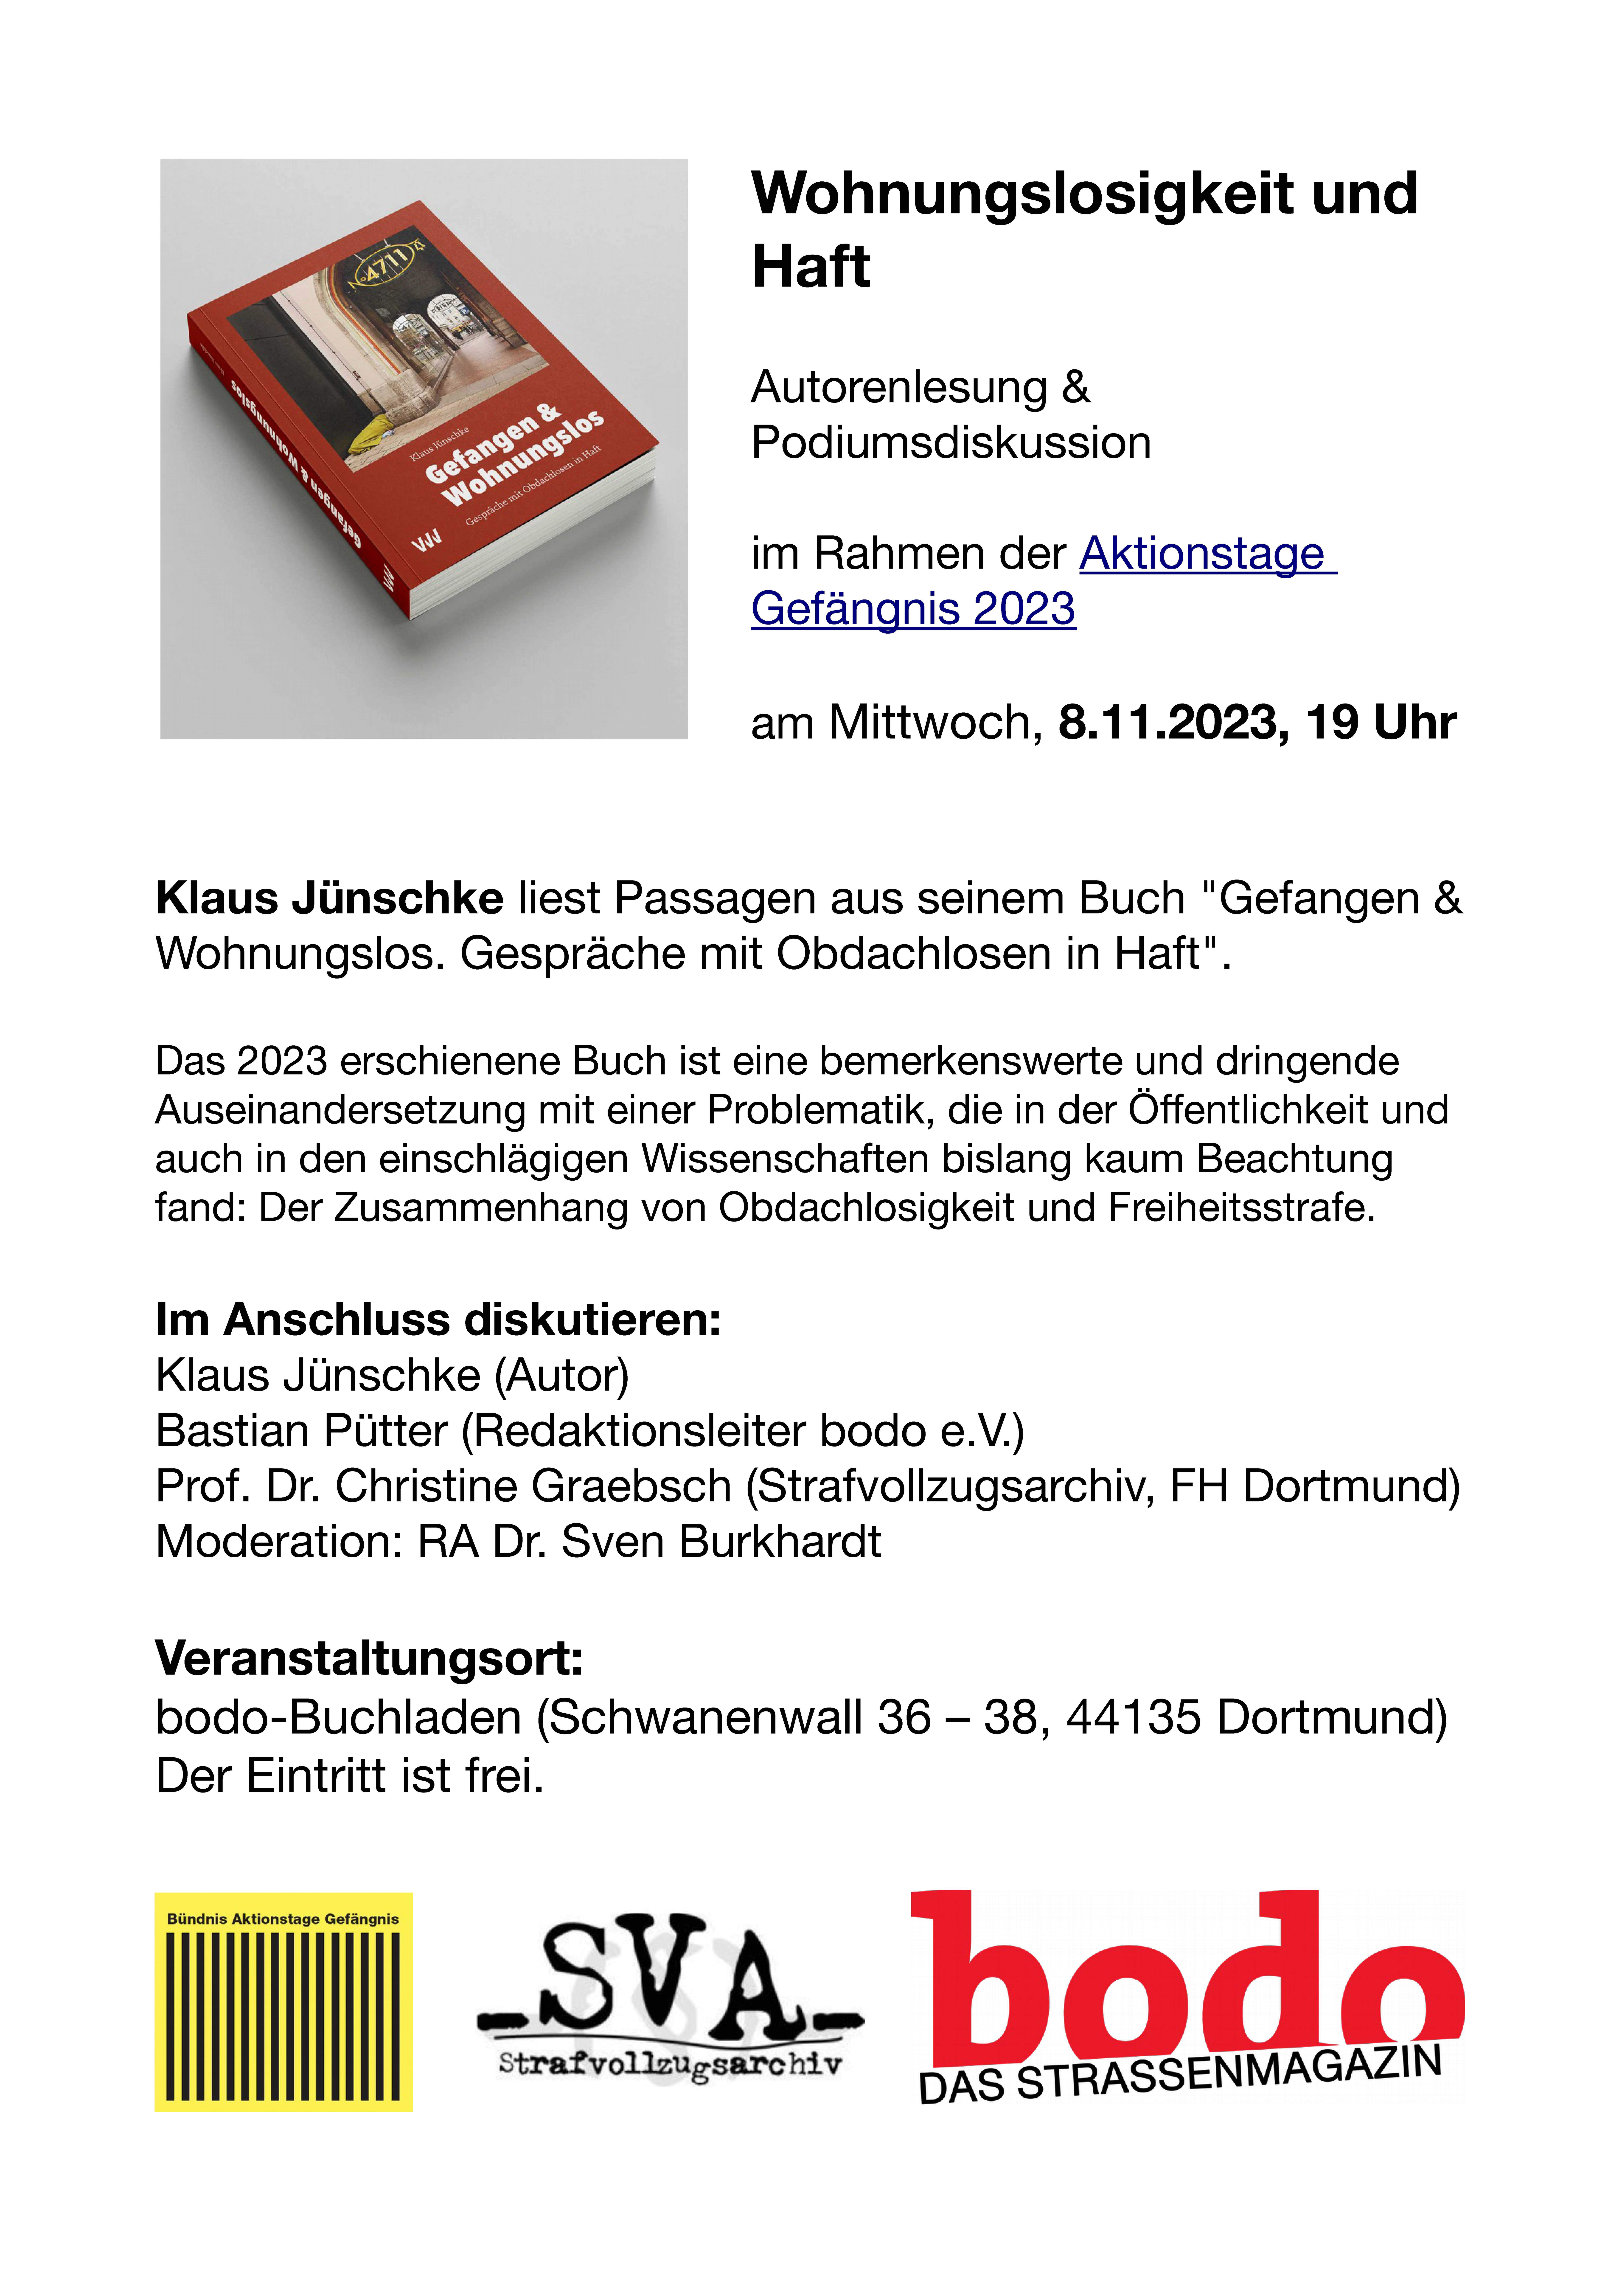 Aktionstage Gefängnis 2023 – Lesung & Diskussion mit Klaus Jünschke, Bastian Pütter & Christine Graebsch in Dortmund